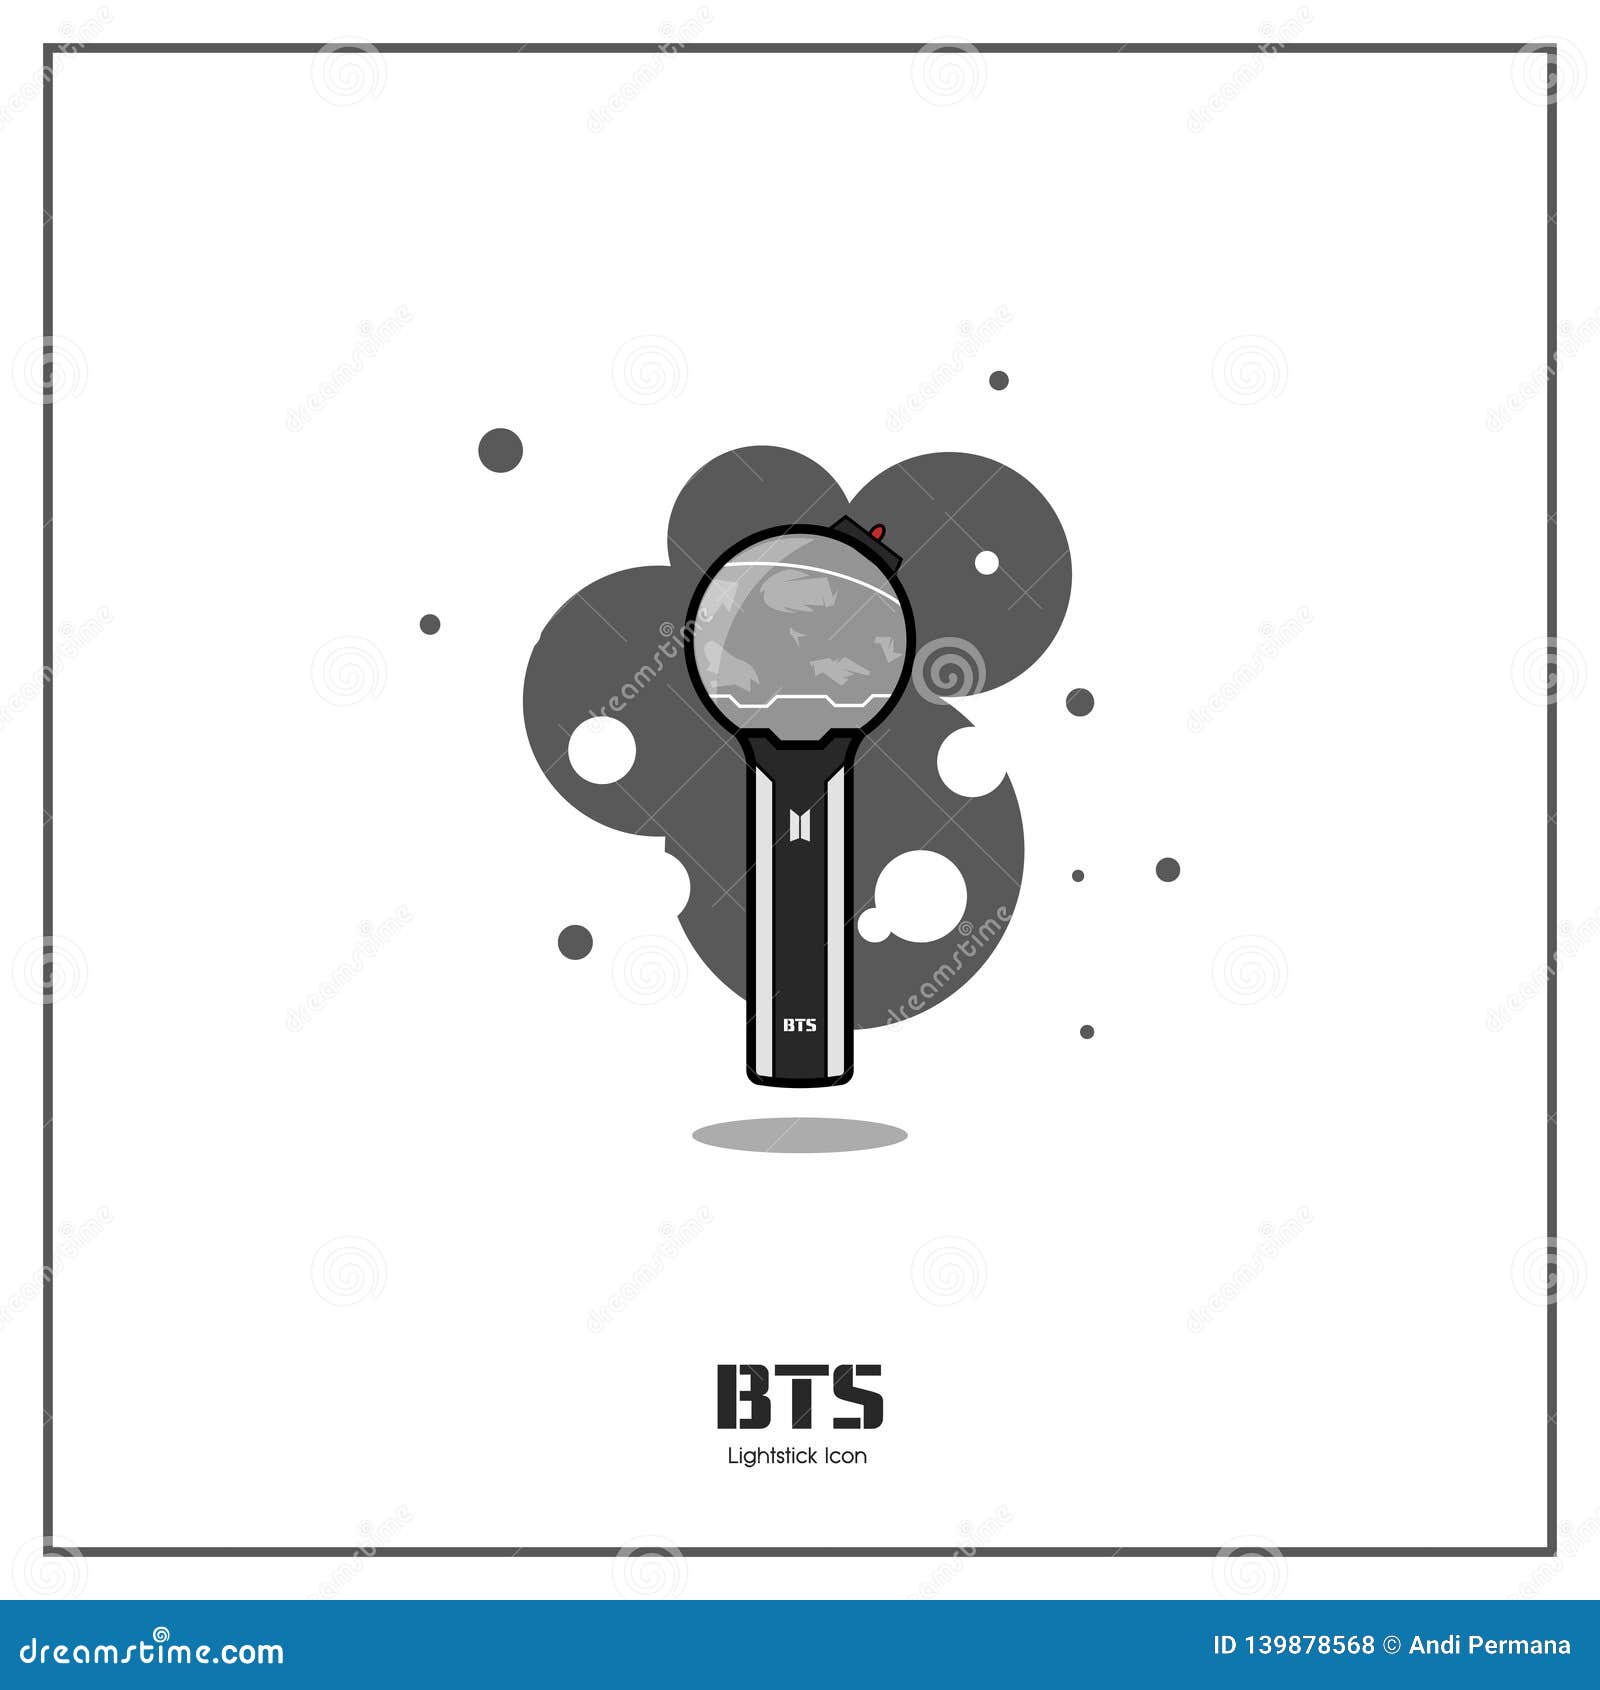 BTS Badges Pack of 4- Round Pin Back Button Badge - Kpop - Set 3 - Dot  Badges